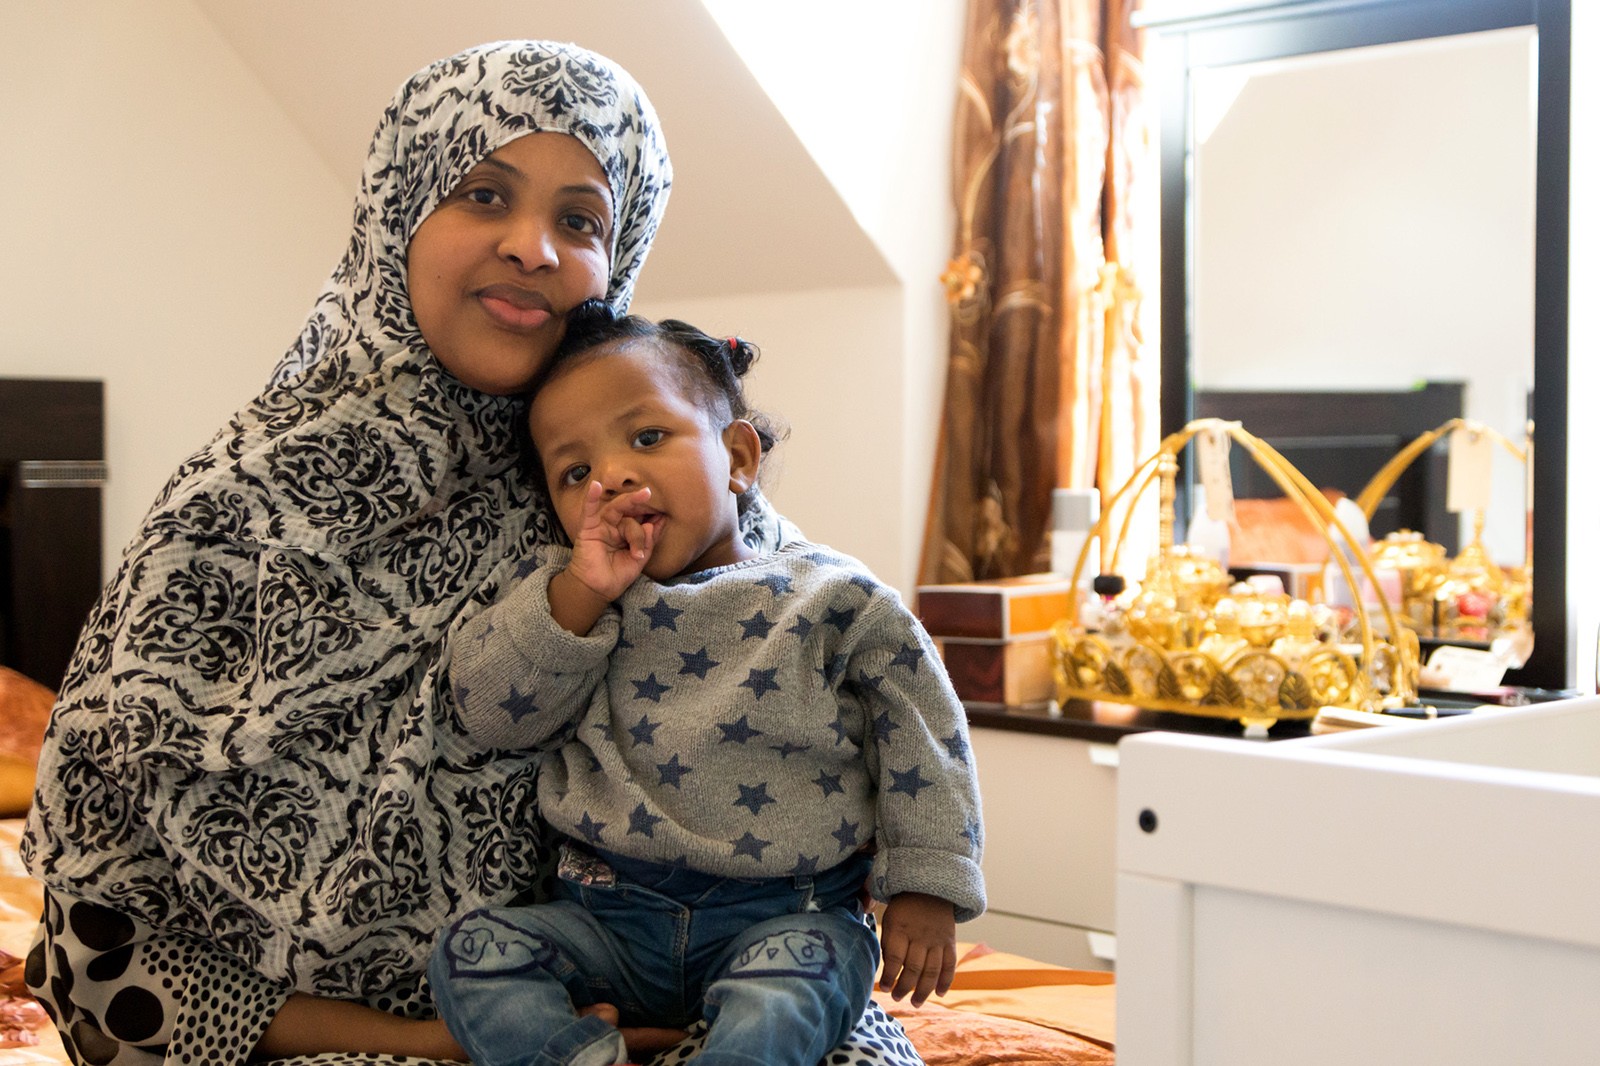 Et somalisk hjem i dansk købstadsidyl</br>Shamso Maqtar og hendes datter i soveværelset i det somaliske hjem.</br>Foto: PR-foto / Den Gamle By